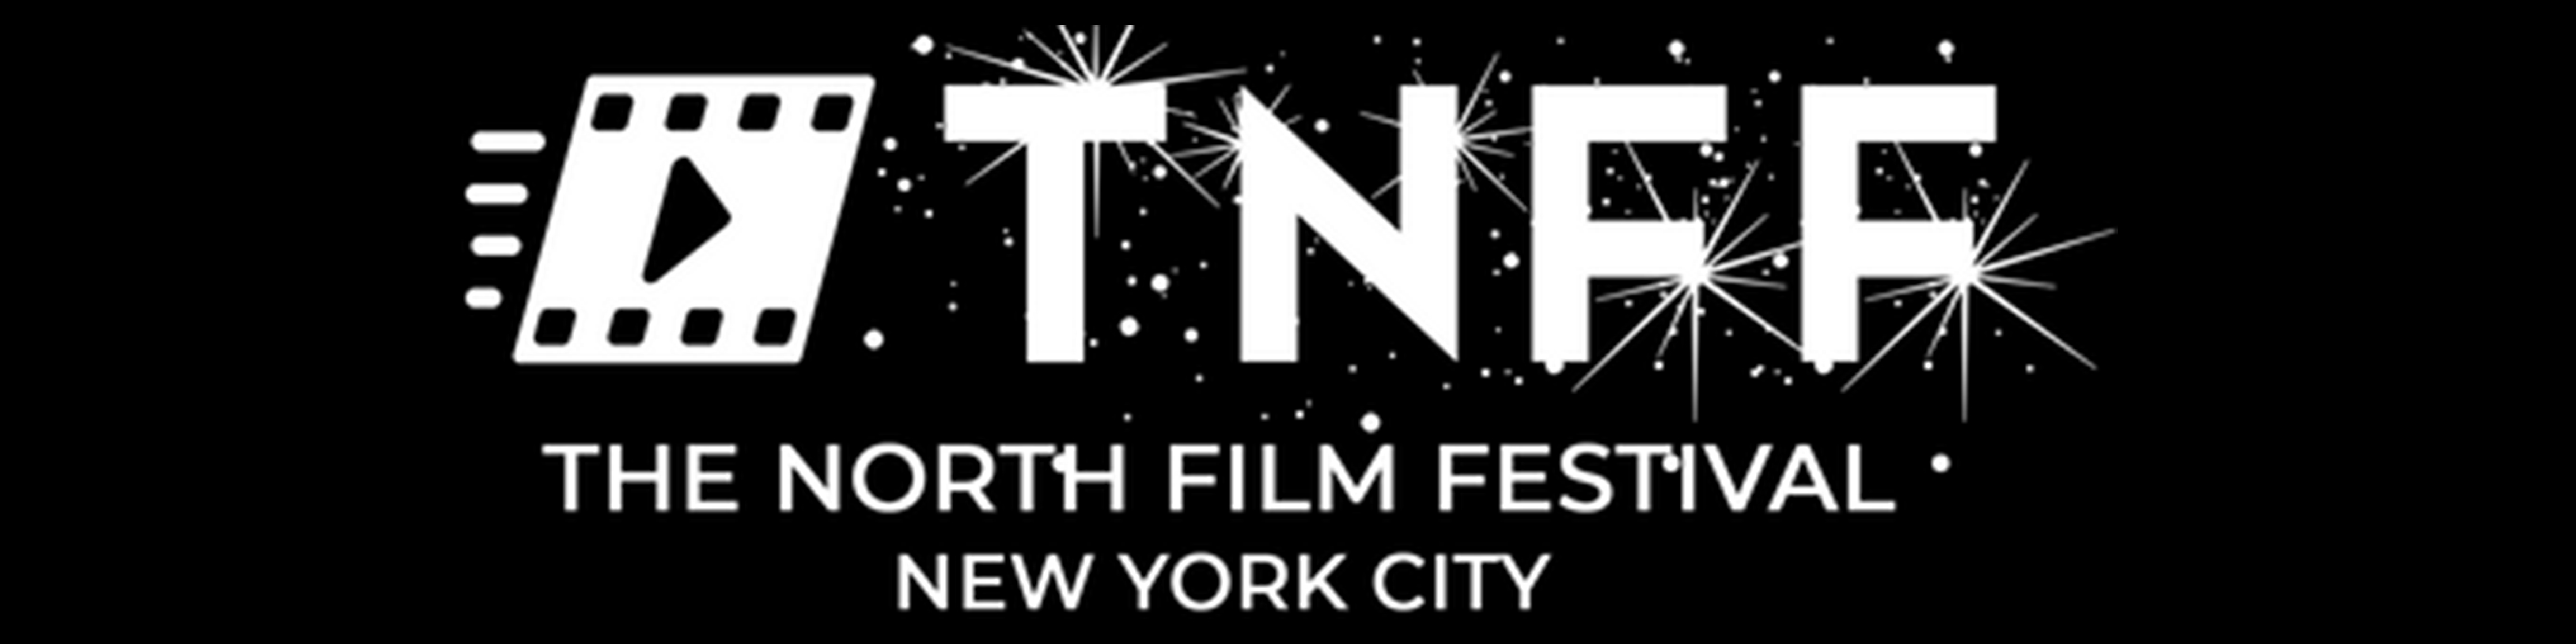 TNFF: The North Film Festival, NYC